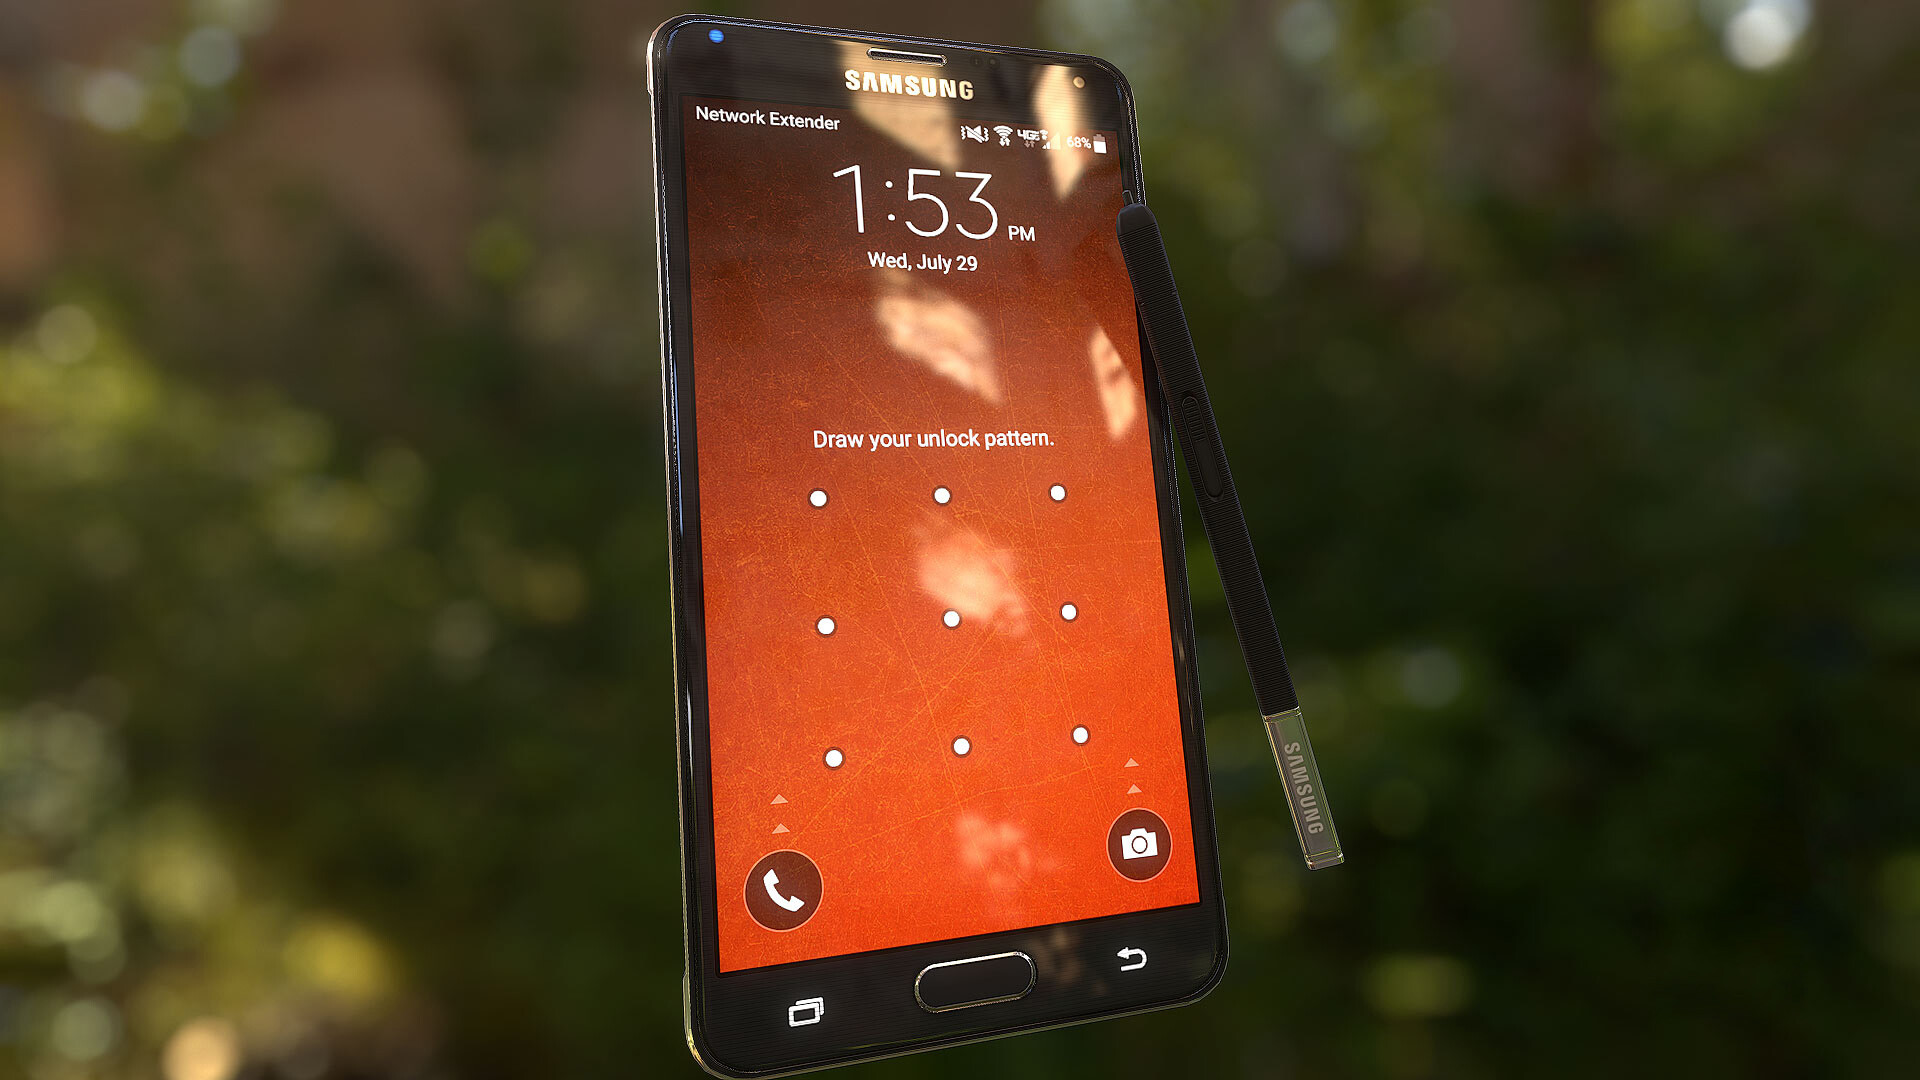 "Galaxy Note 4" Smartphone Prop